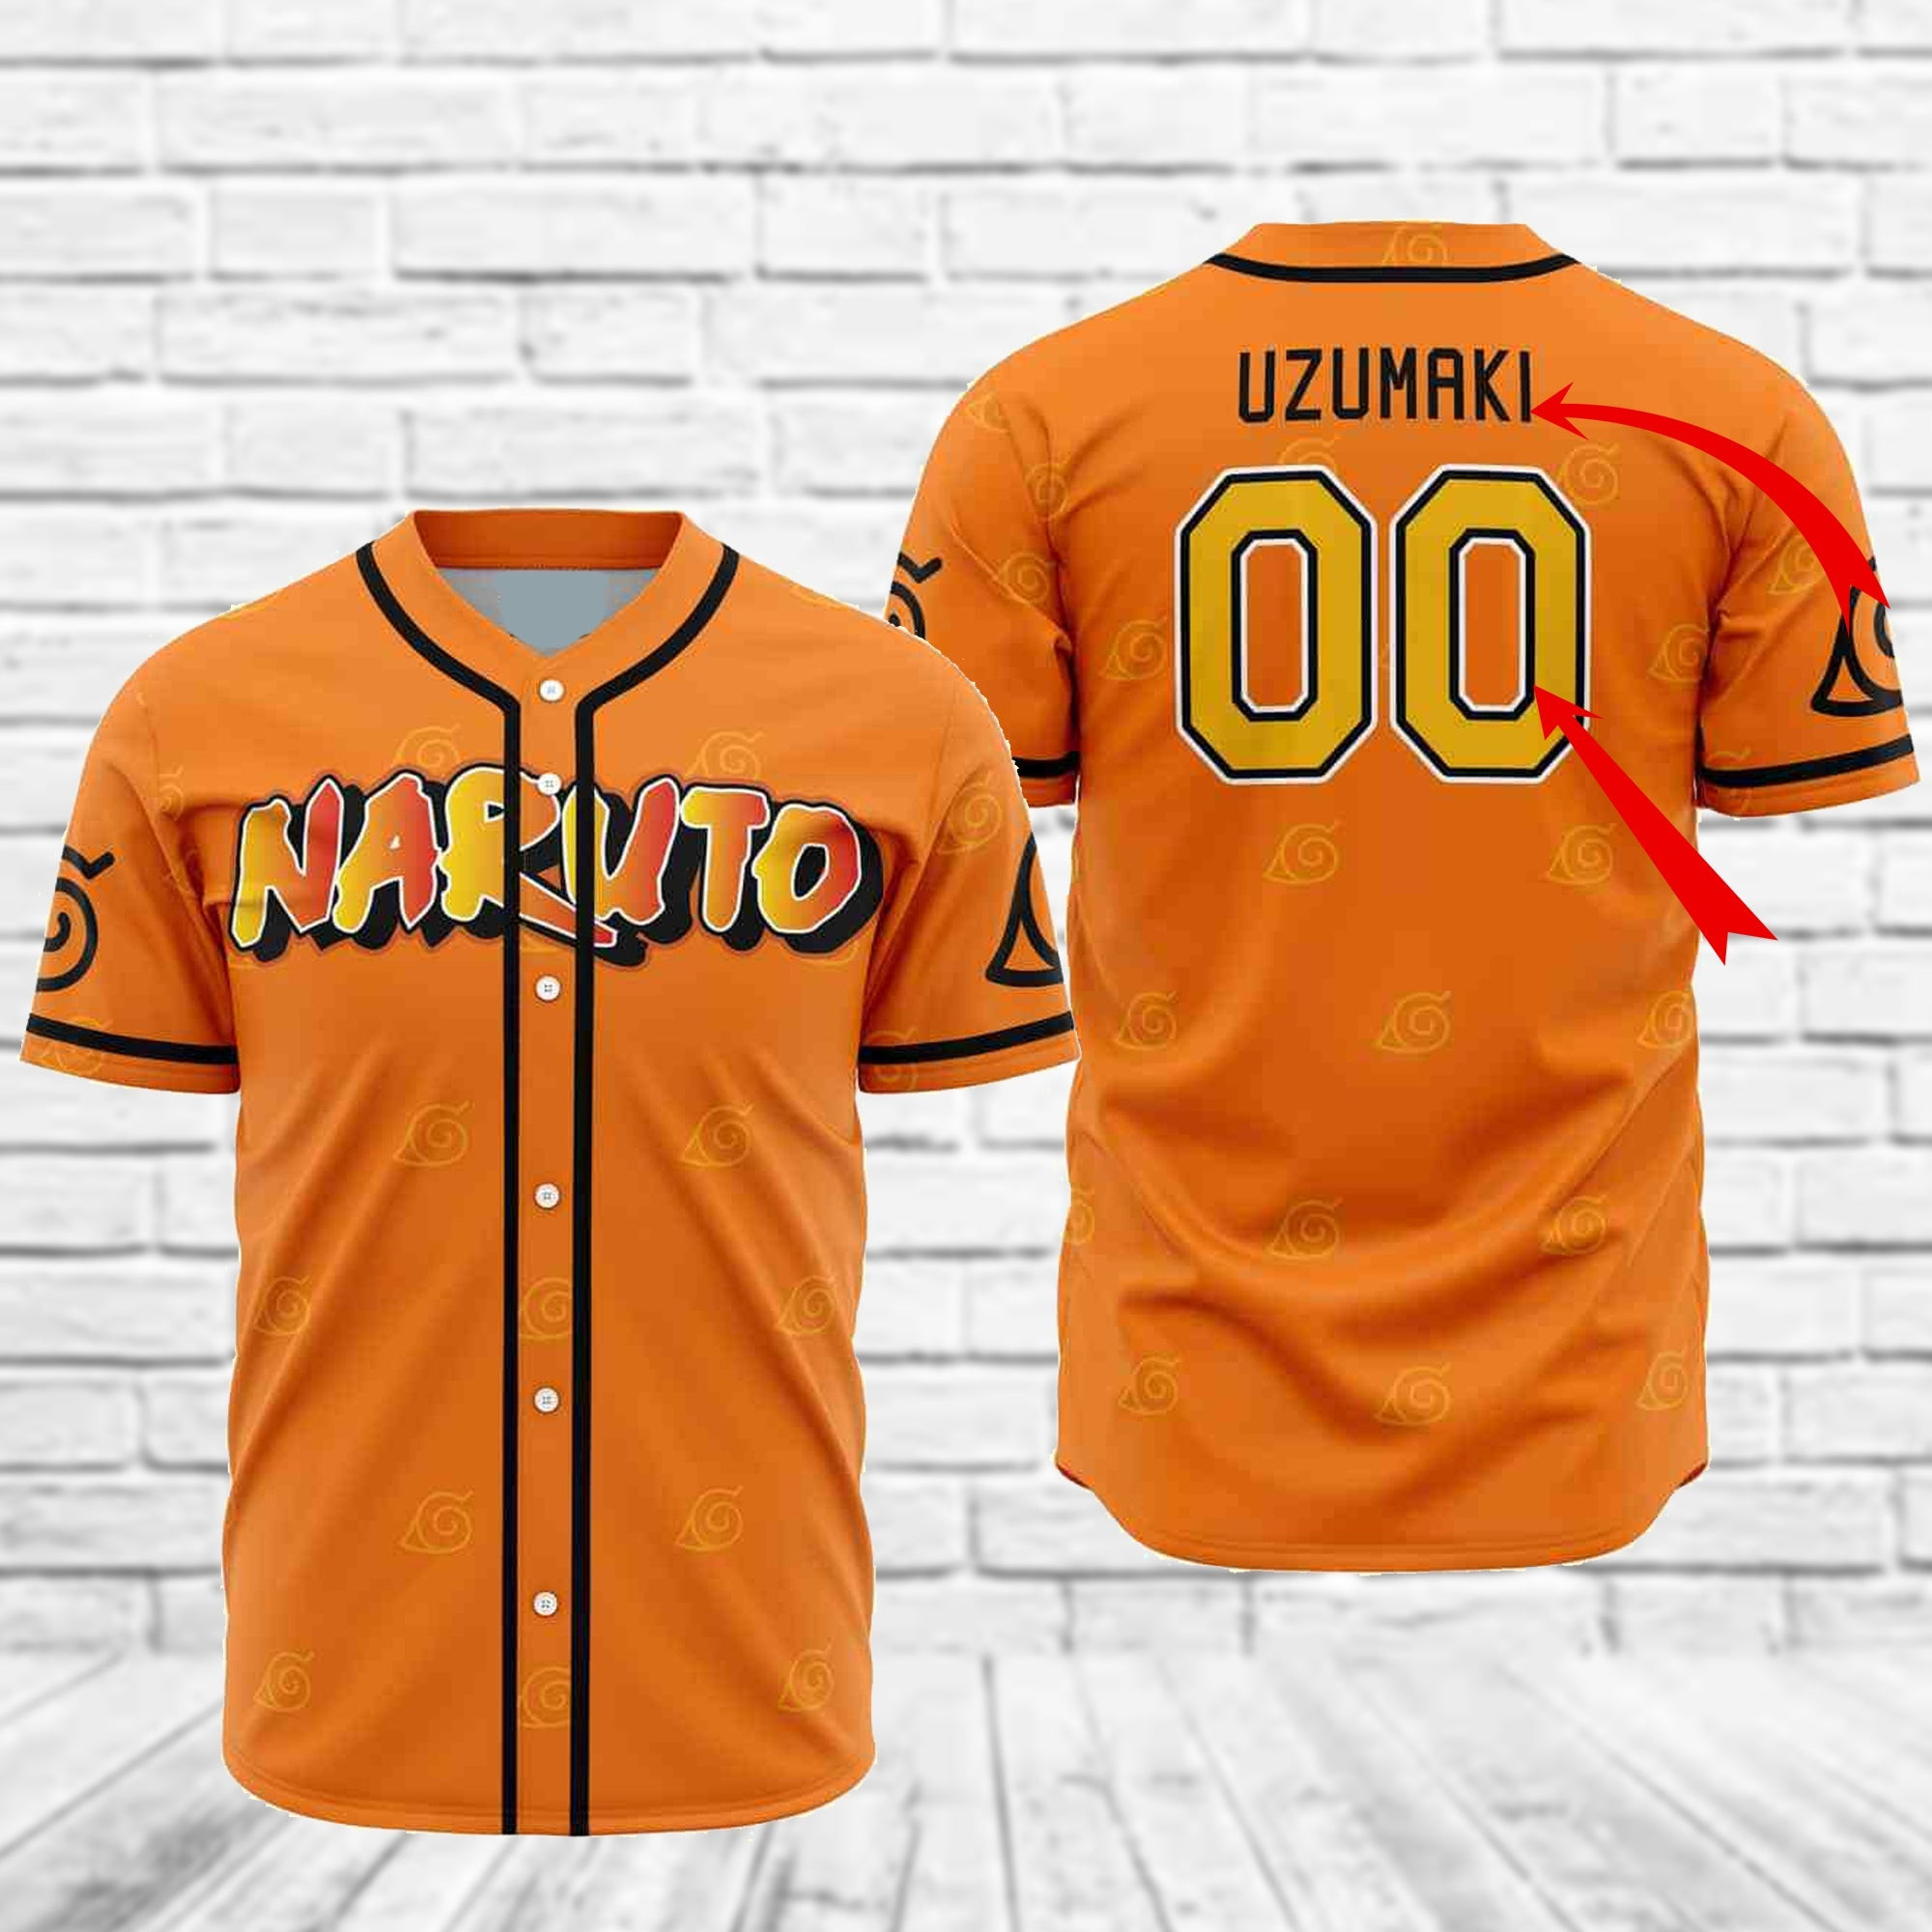 Personalized Naruto Uzumaki Baseball Jersey, Unisex Baseball Jersey for Men Women